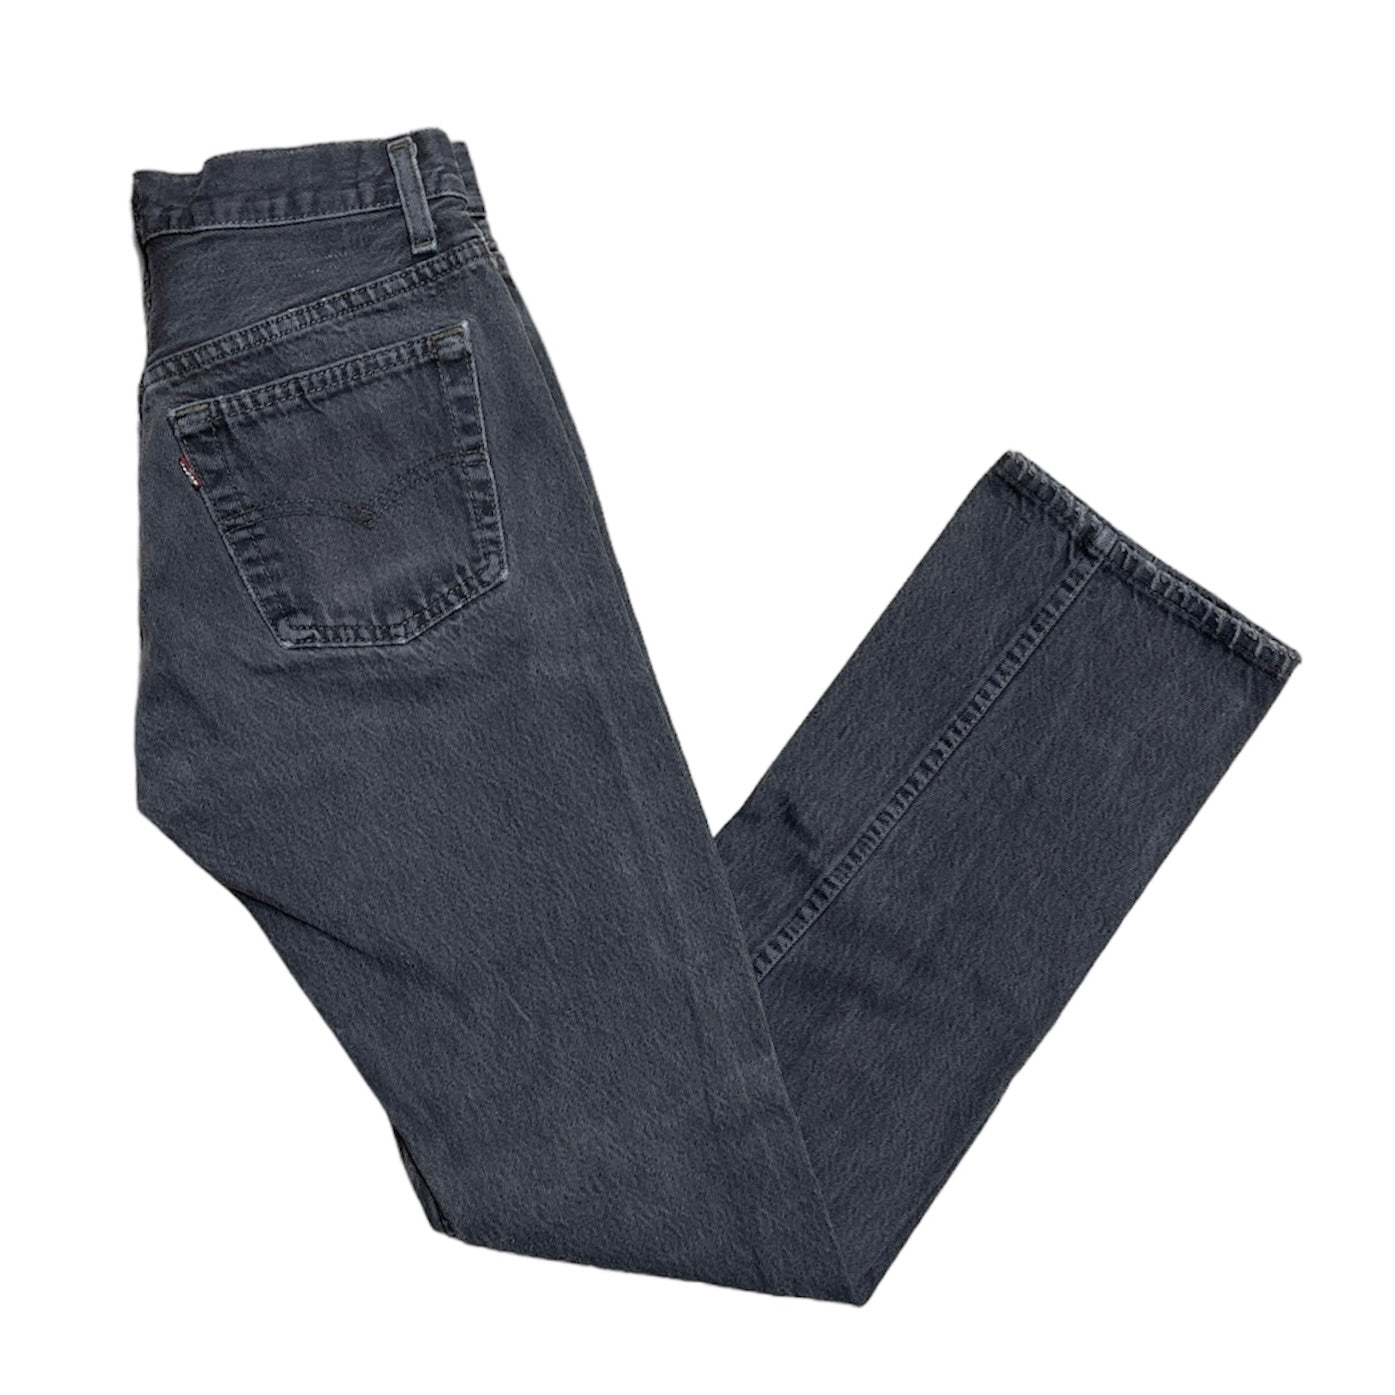 Vintage Levis 501 Grey Jeans (W28/L32)